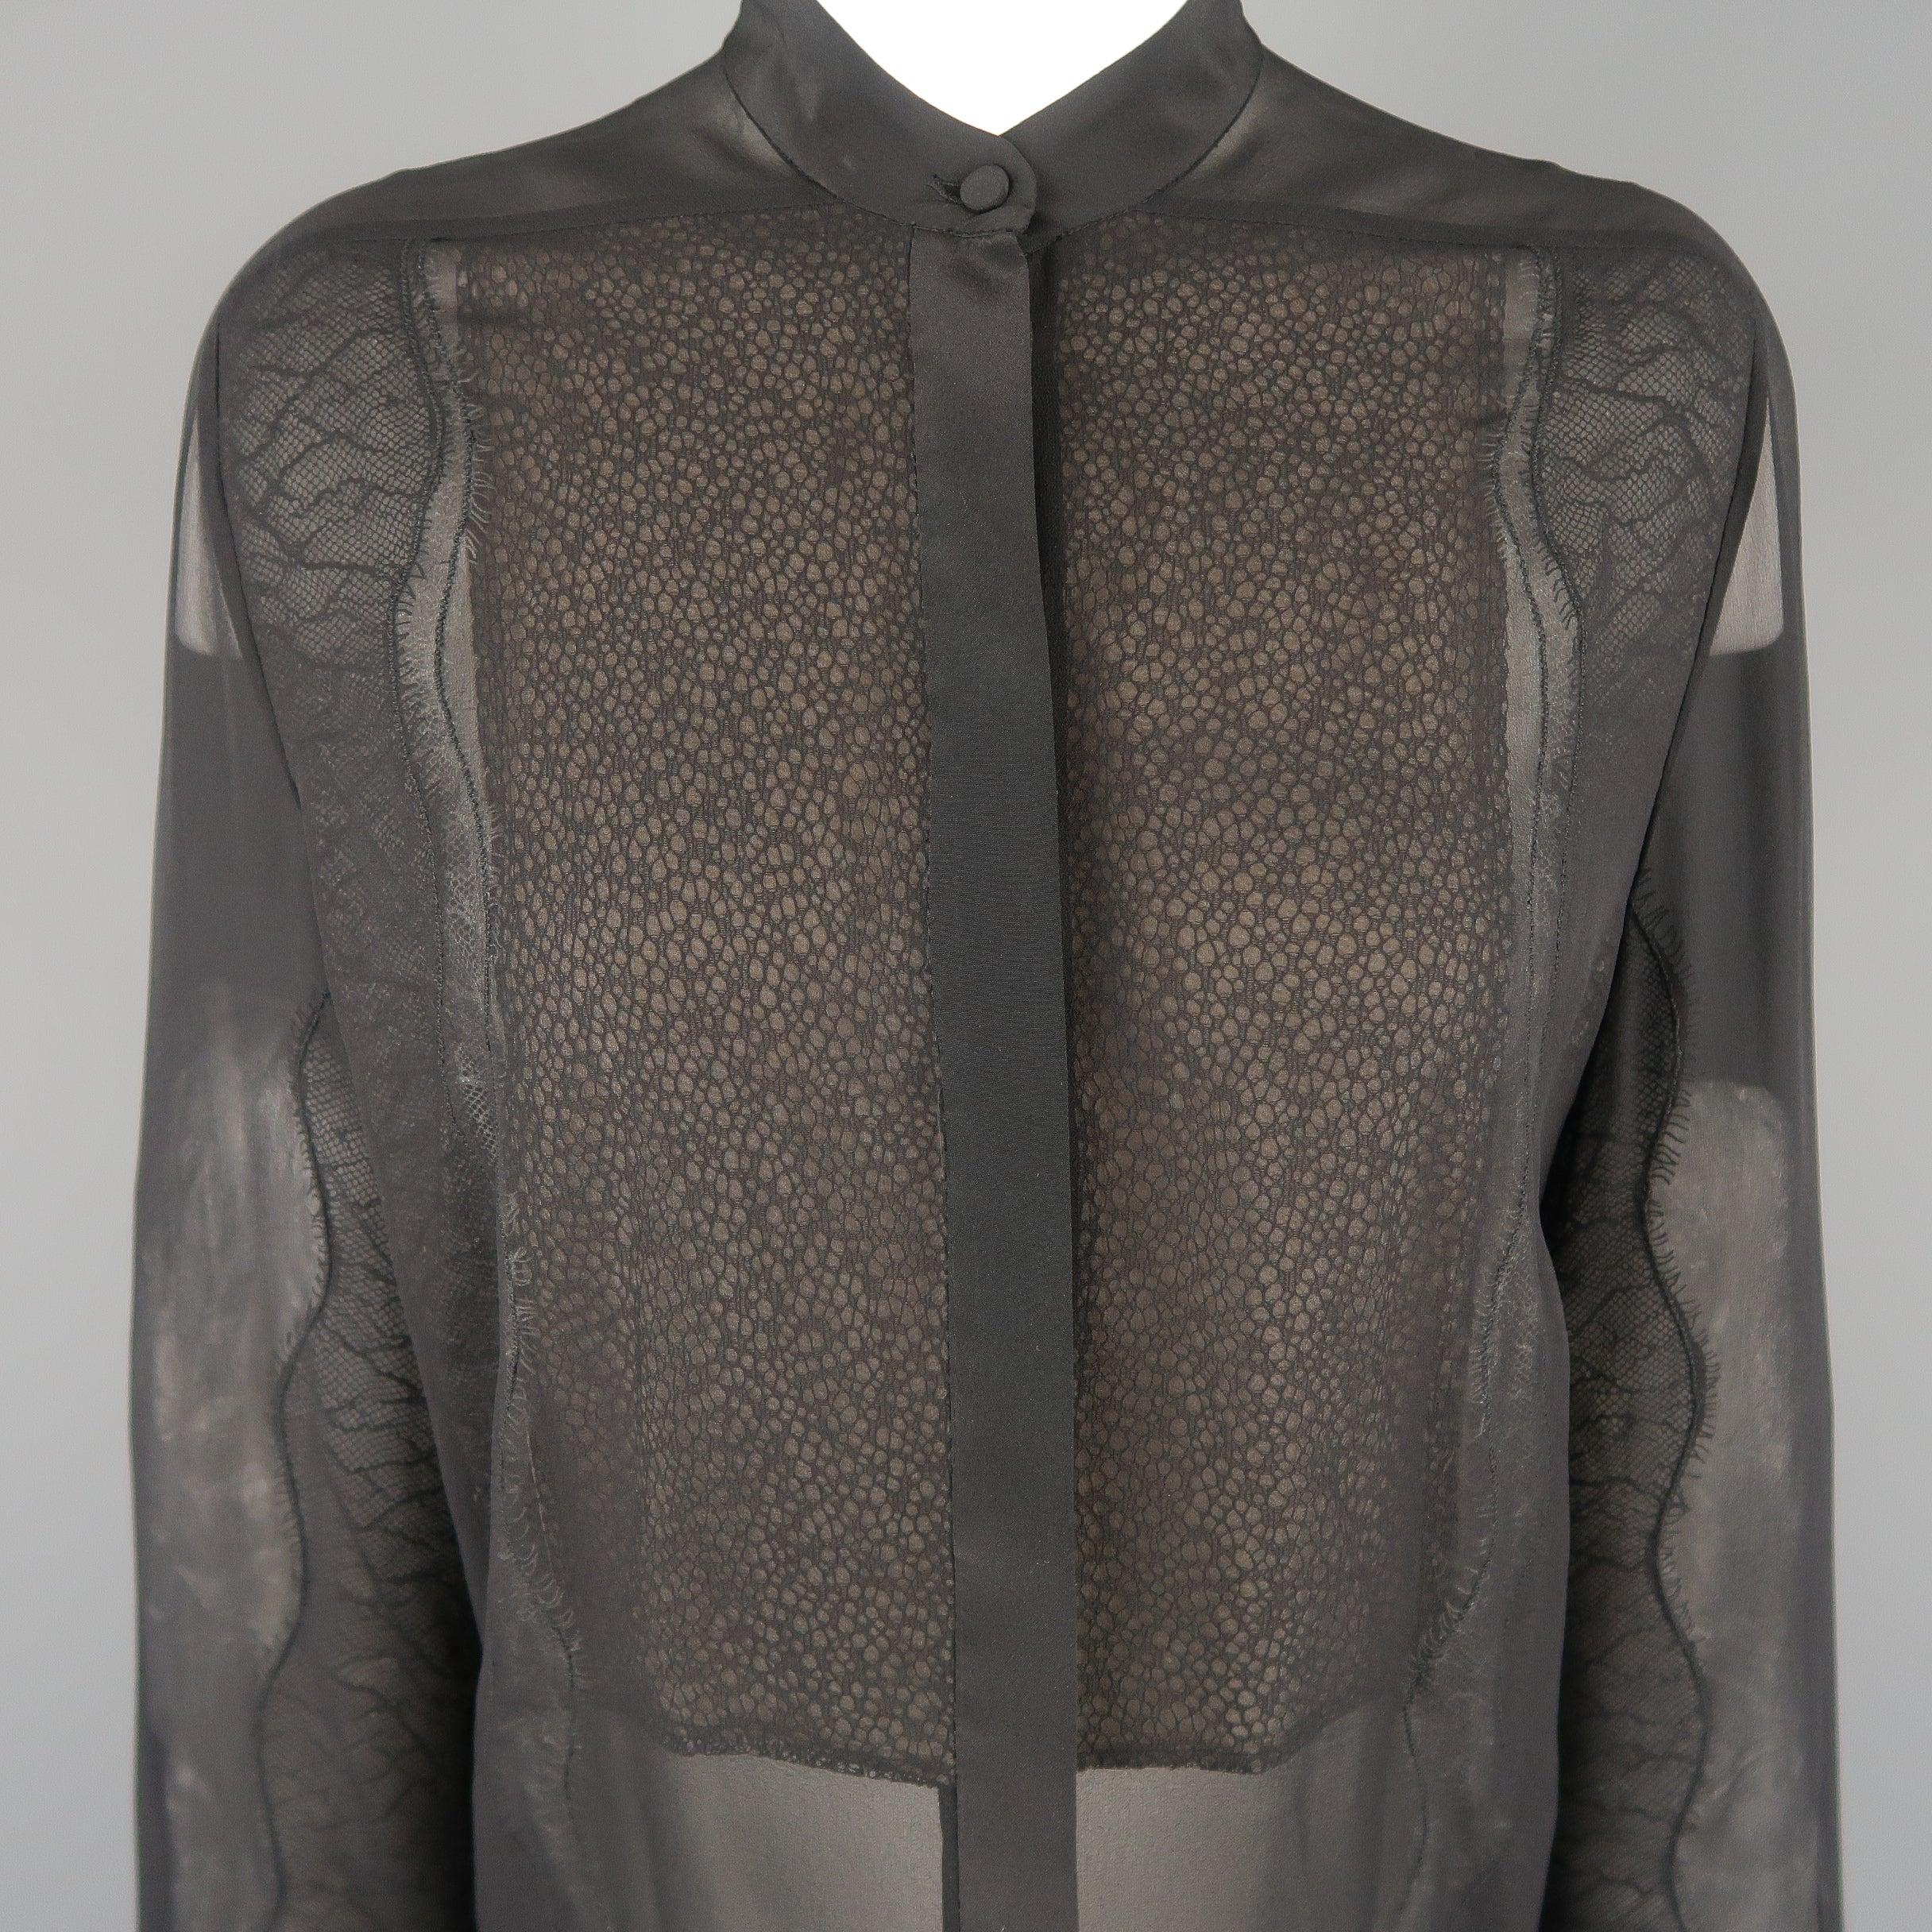 La blouse 3.1 PILLIP LIM est en mousseline de soie noire avec un col bandeau, une patte de boutonnage cachée sur le devant et des empiècements en dentelle. 
Excellent état d'origine.
 

Marqué :   (sans taille)
 

Mesures : 
  
l	Épaule : 14 pouces